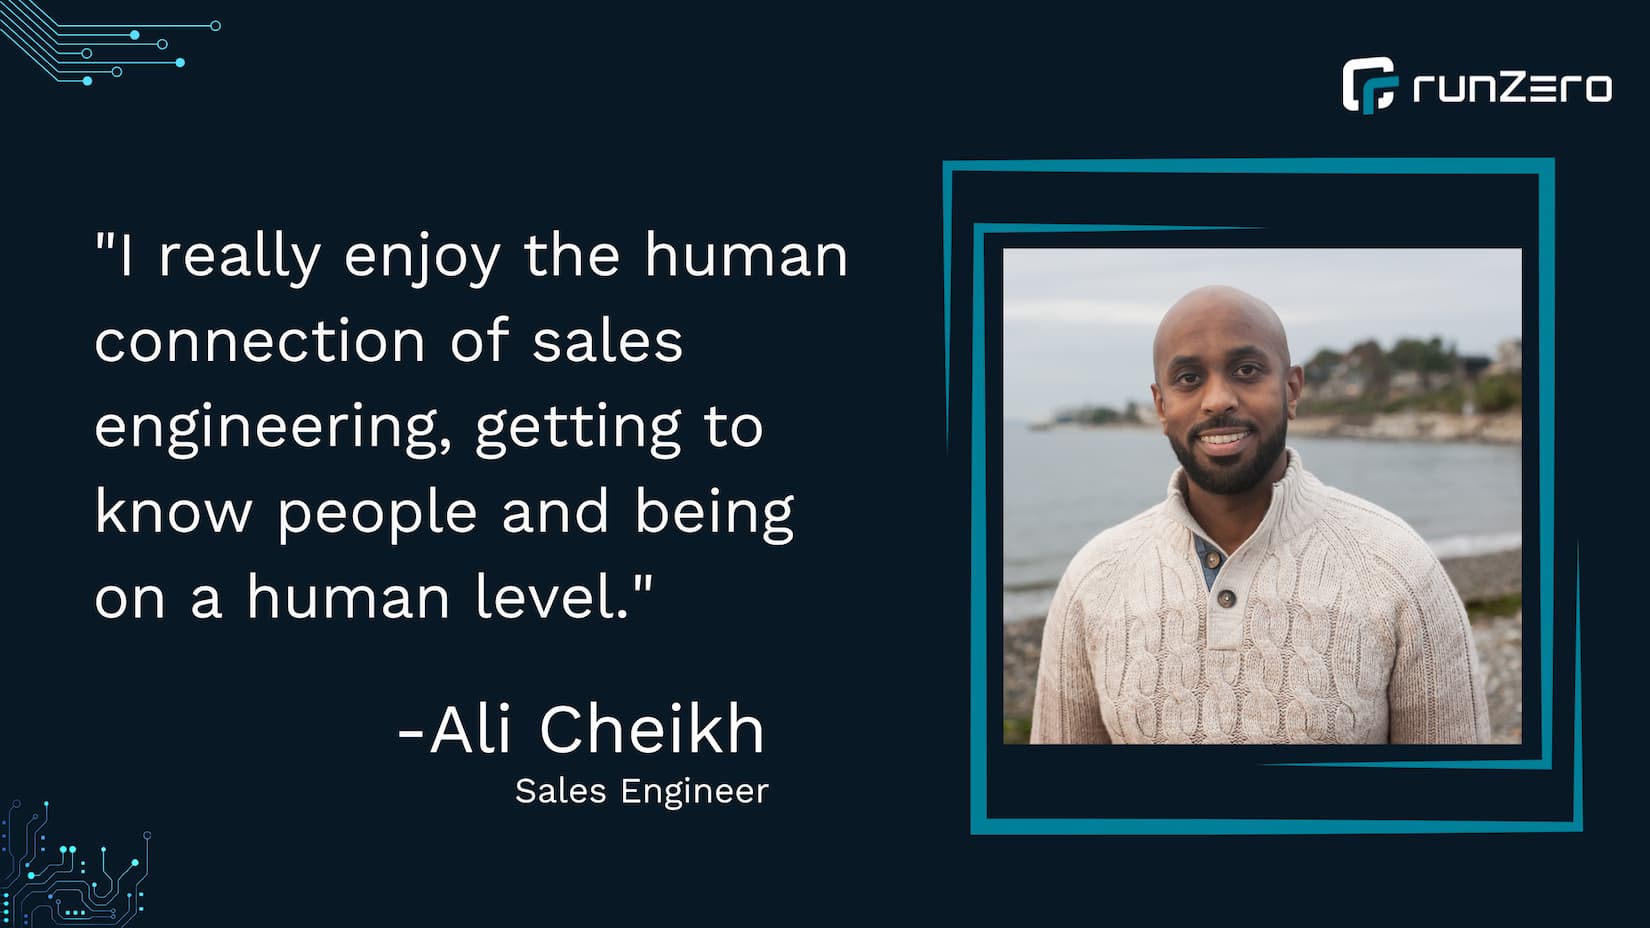 Employee Spotlight: Ali Cheikh